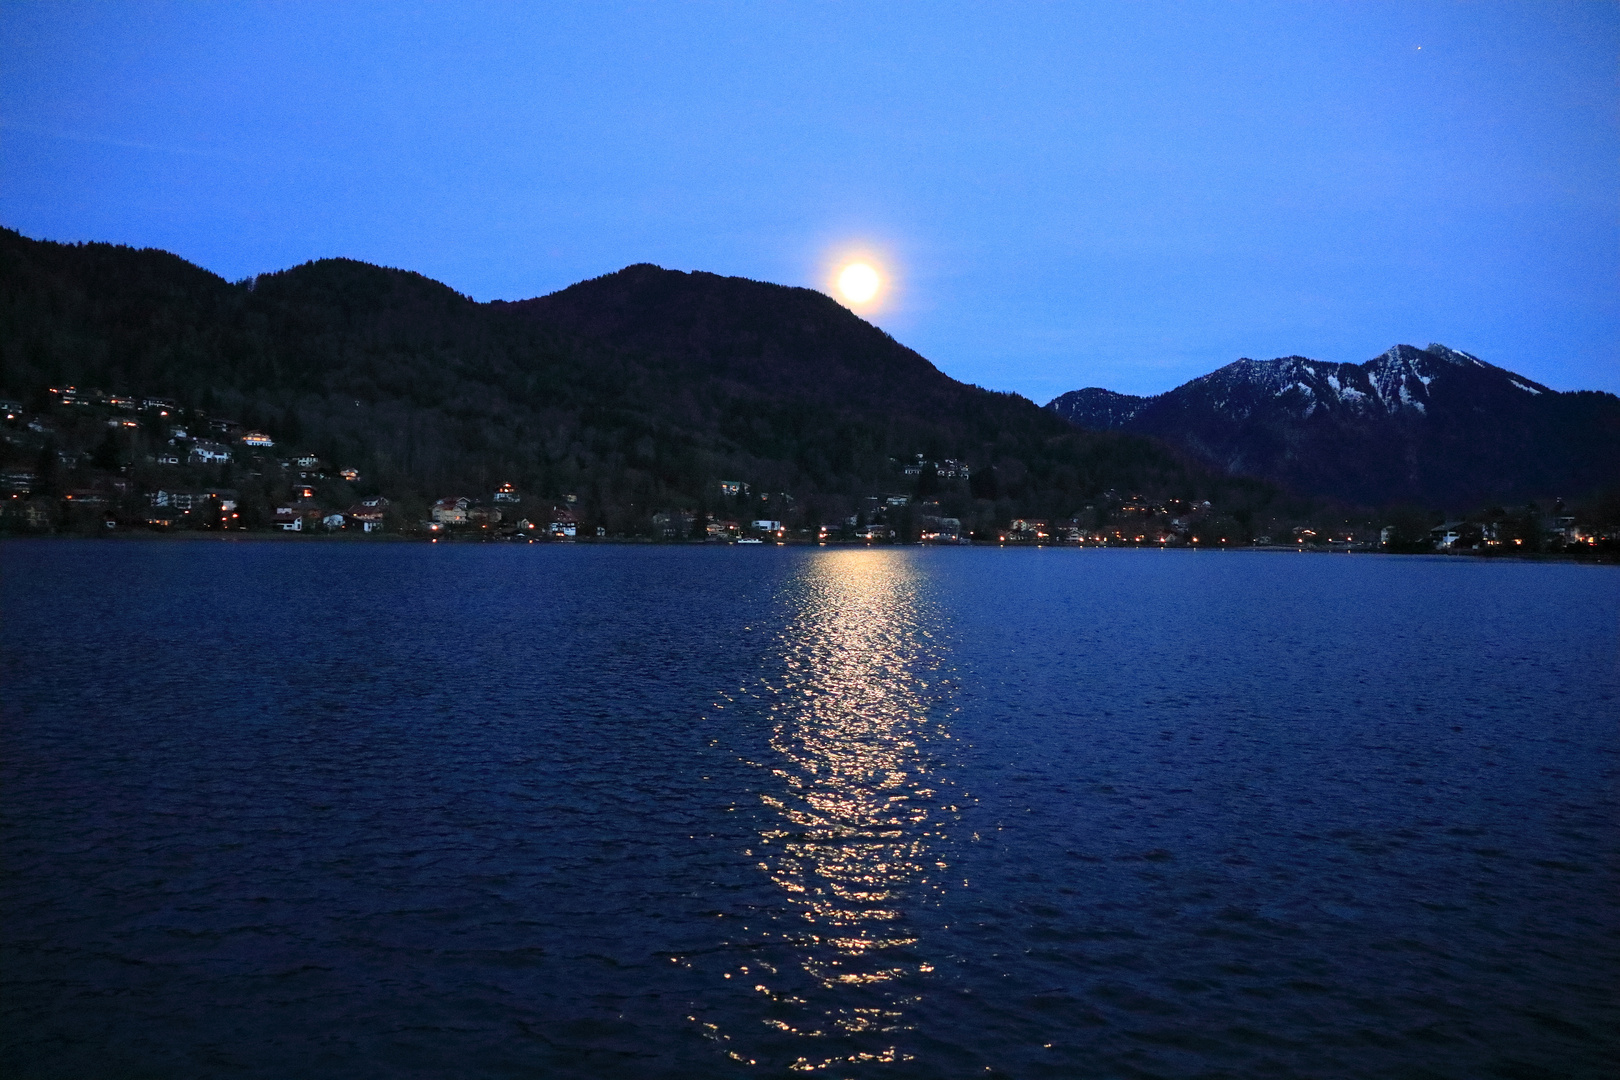 Der Mond erscheint am Himmel und leuchtet auf den See